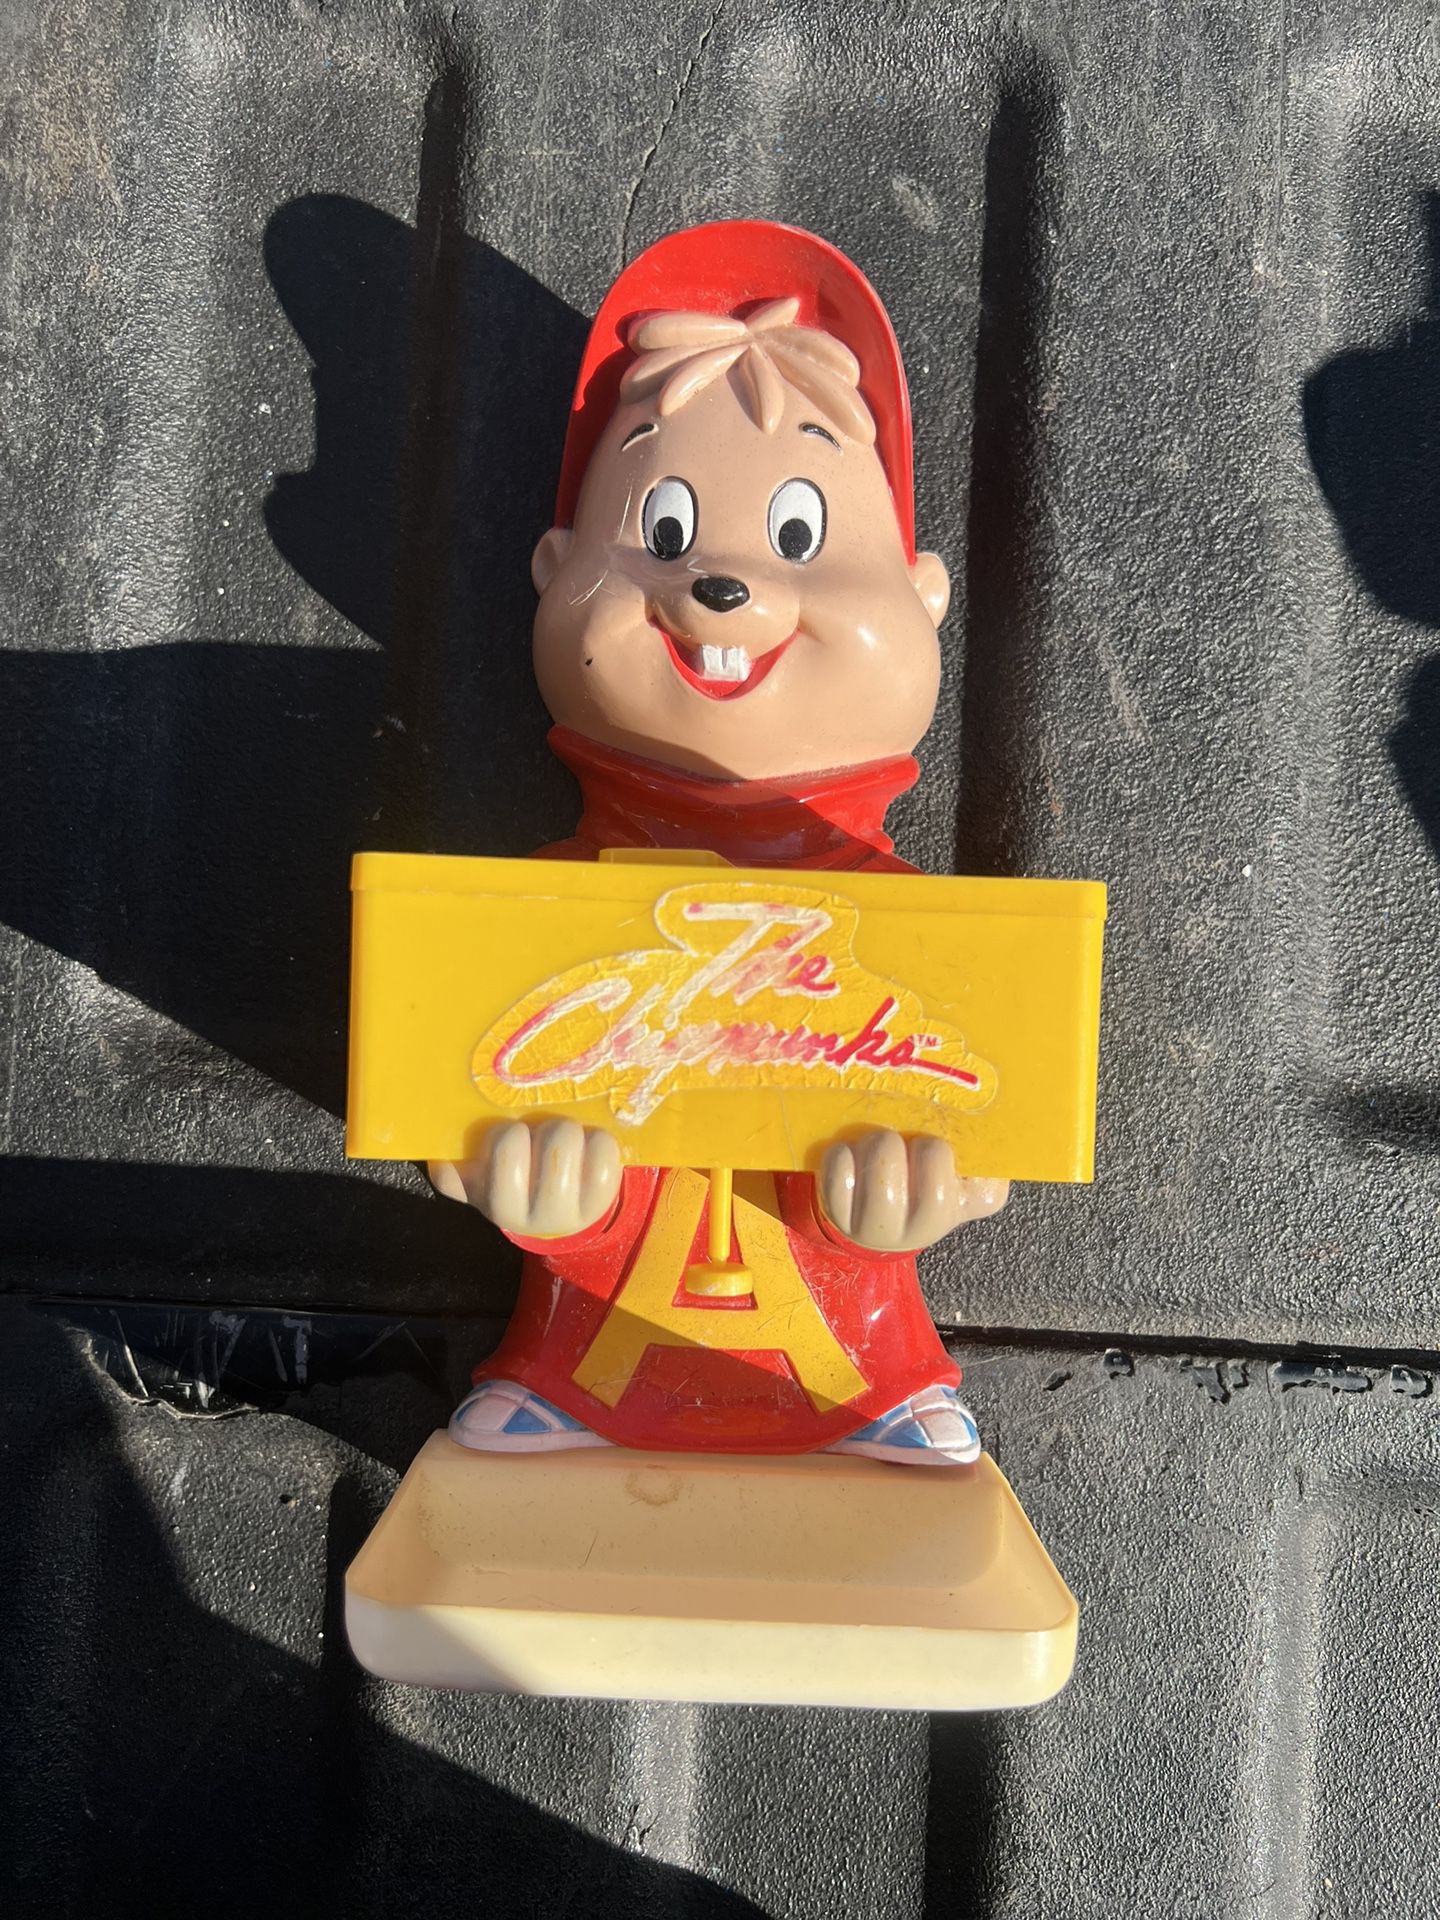 Vintage 1984 Helm Toy Soap Dispenser - Alvin - The Chipmunks 